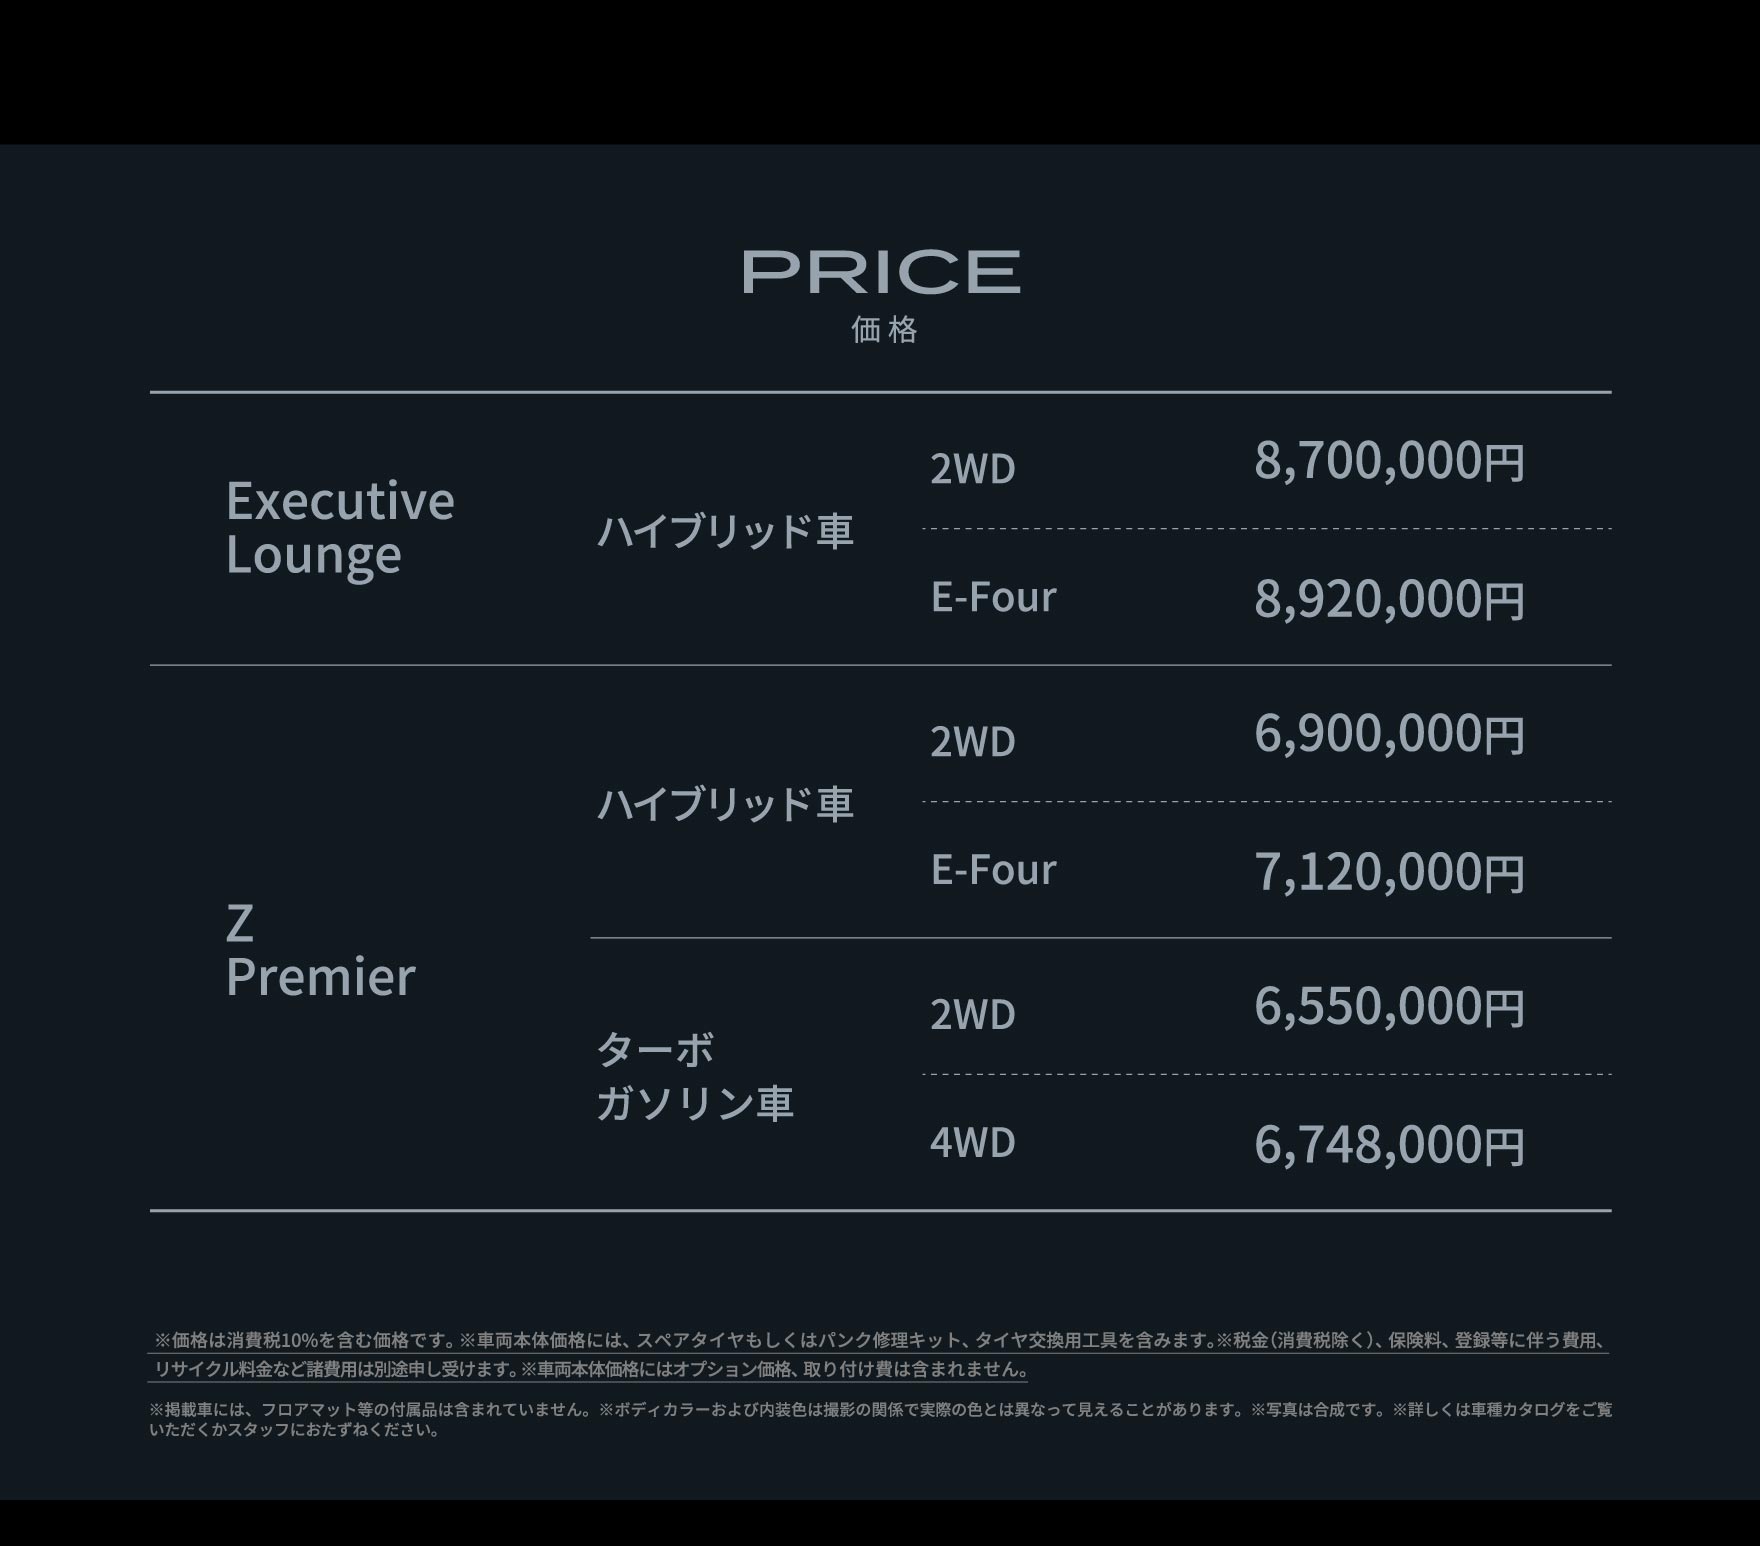 PRICE 価格 Executive Loungeハイブリッド車2WD8,700,000円/E-Four8,920,000円